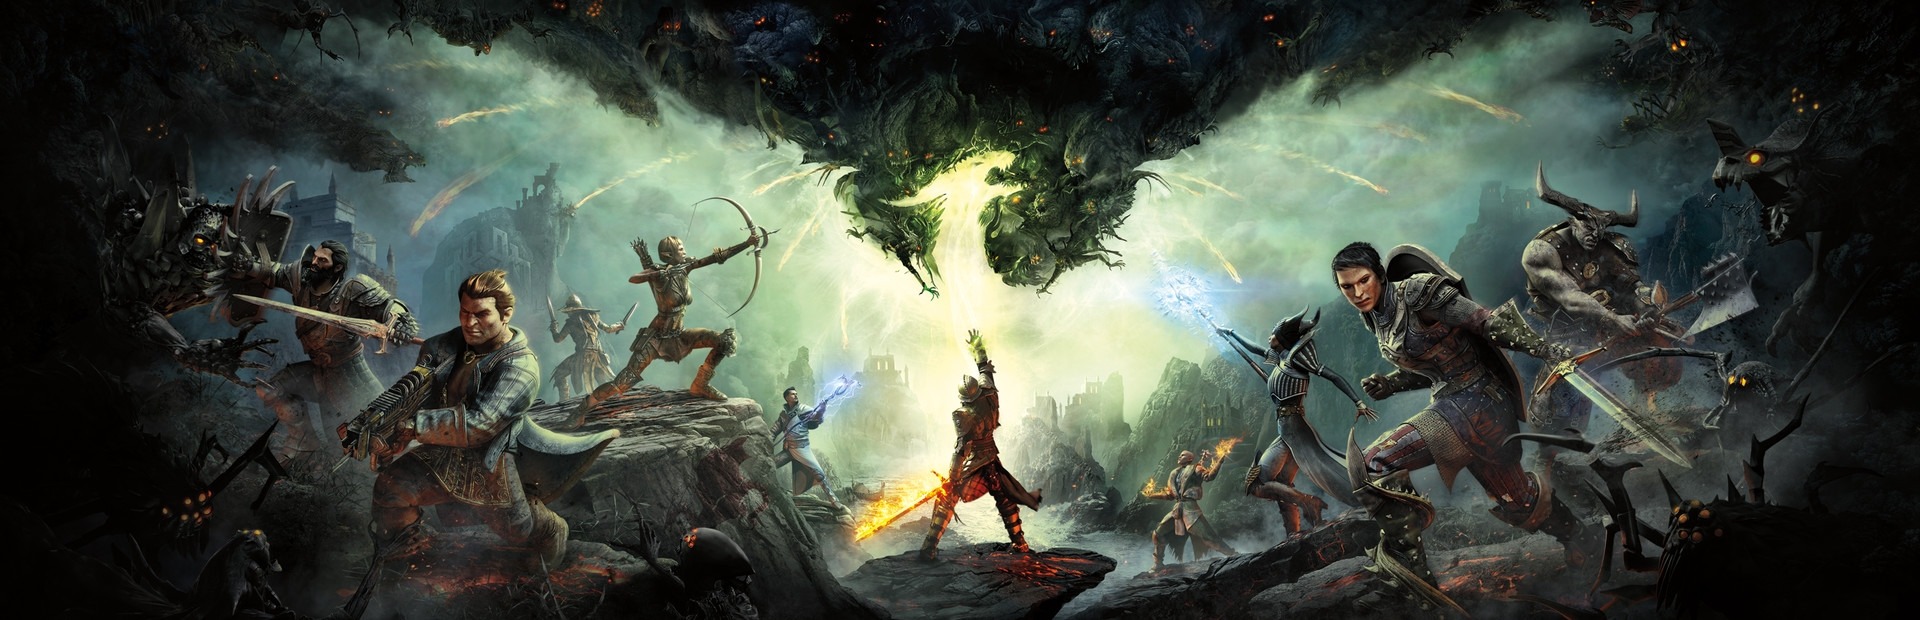 Banner Dragon Age: Inquisition - Trespasser